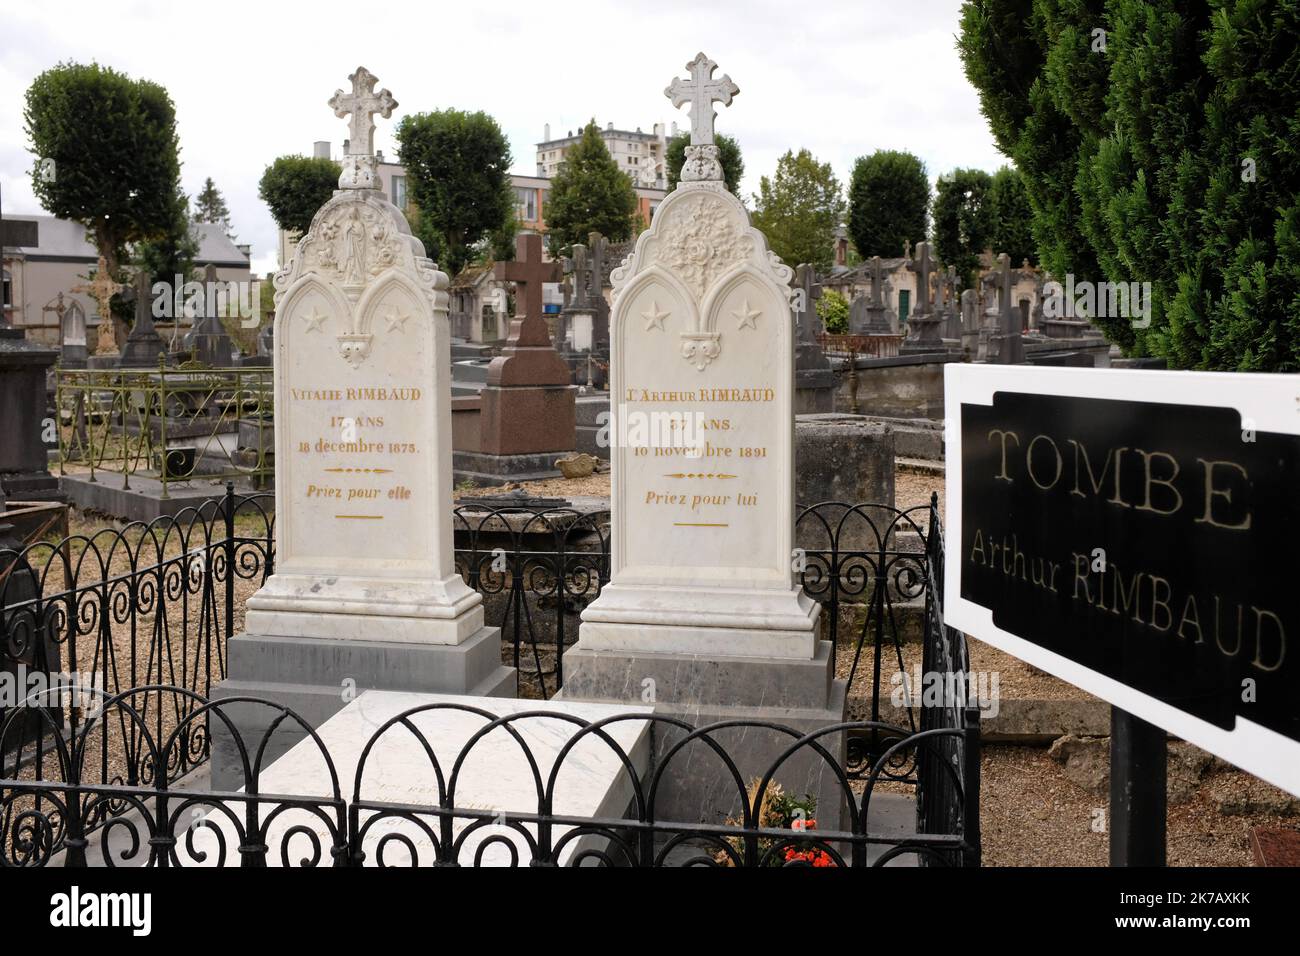 ©PHOTOPQR/LE MIDI LIBRE/JEAN MICHEL MART ; MONTPELLIER ; 24/08/2020 ; CHARLEVILLE MEZIERES (08) / CIMETIERE / TOMBE D'ARTHUR RIMBAUD ET DE SA SOEUR VITALIE Arthur Rimbaud ist begraben in Charleville-Mezieres Cimetière, Ardennen, Frankreich Stockfoto